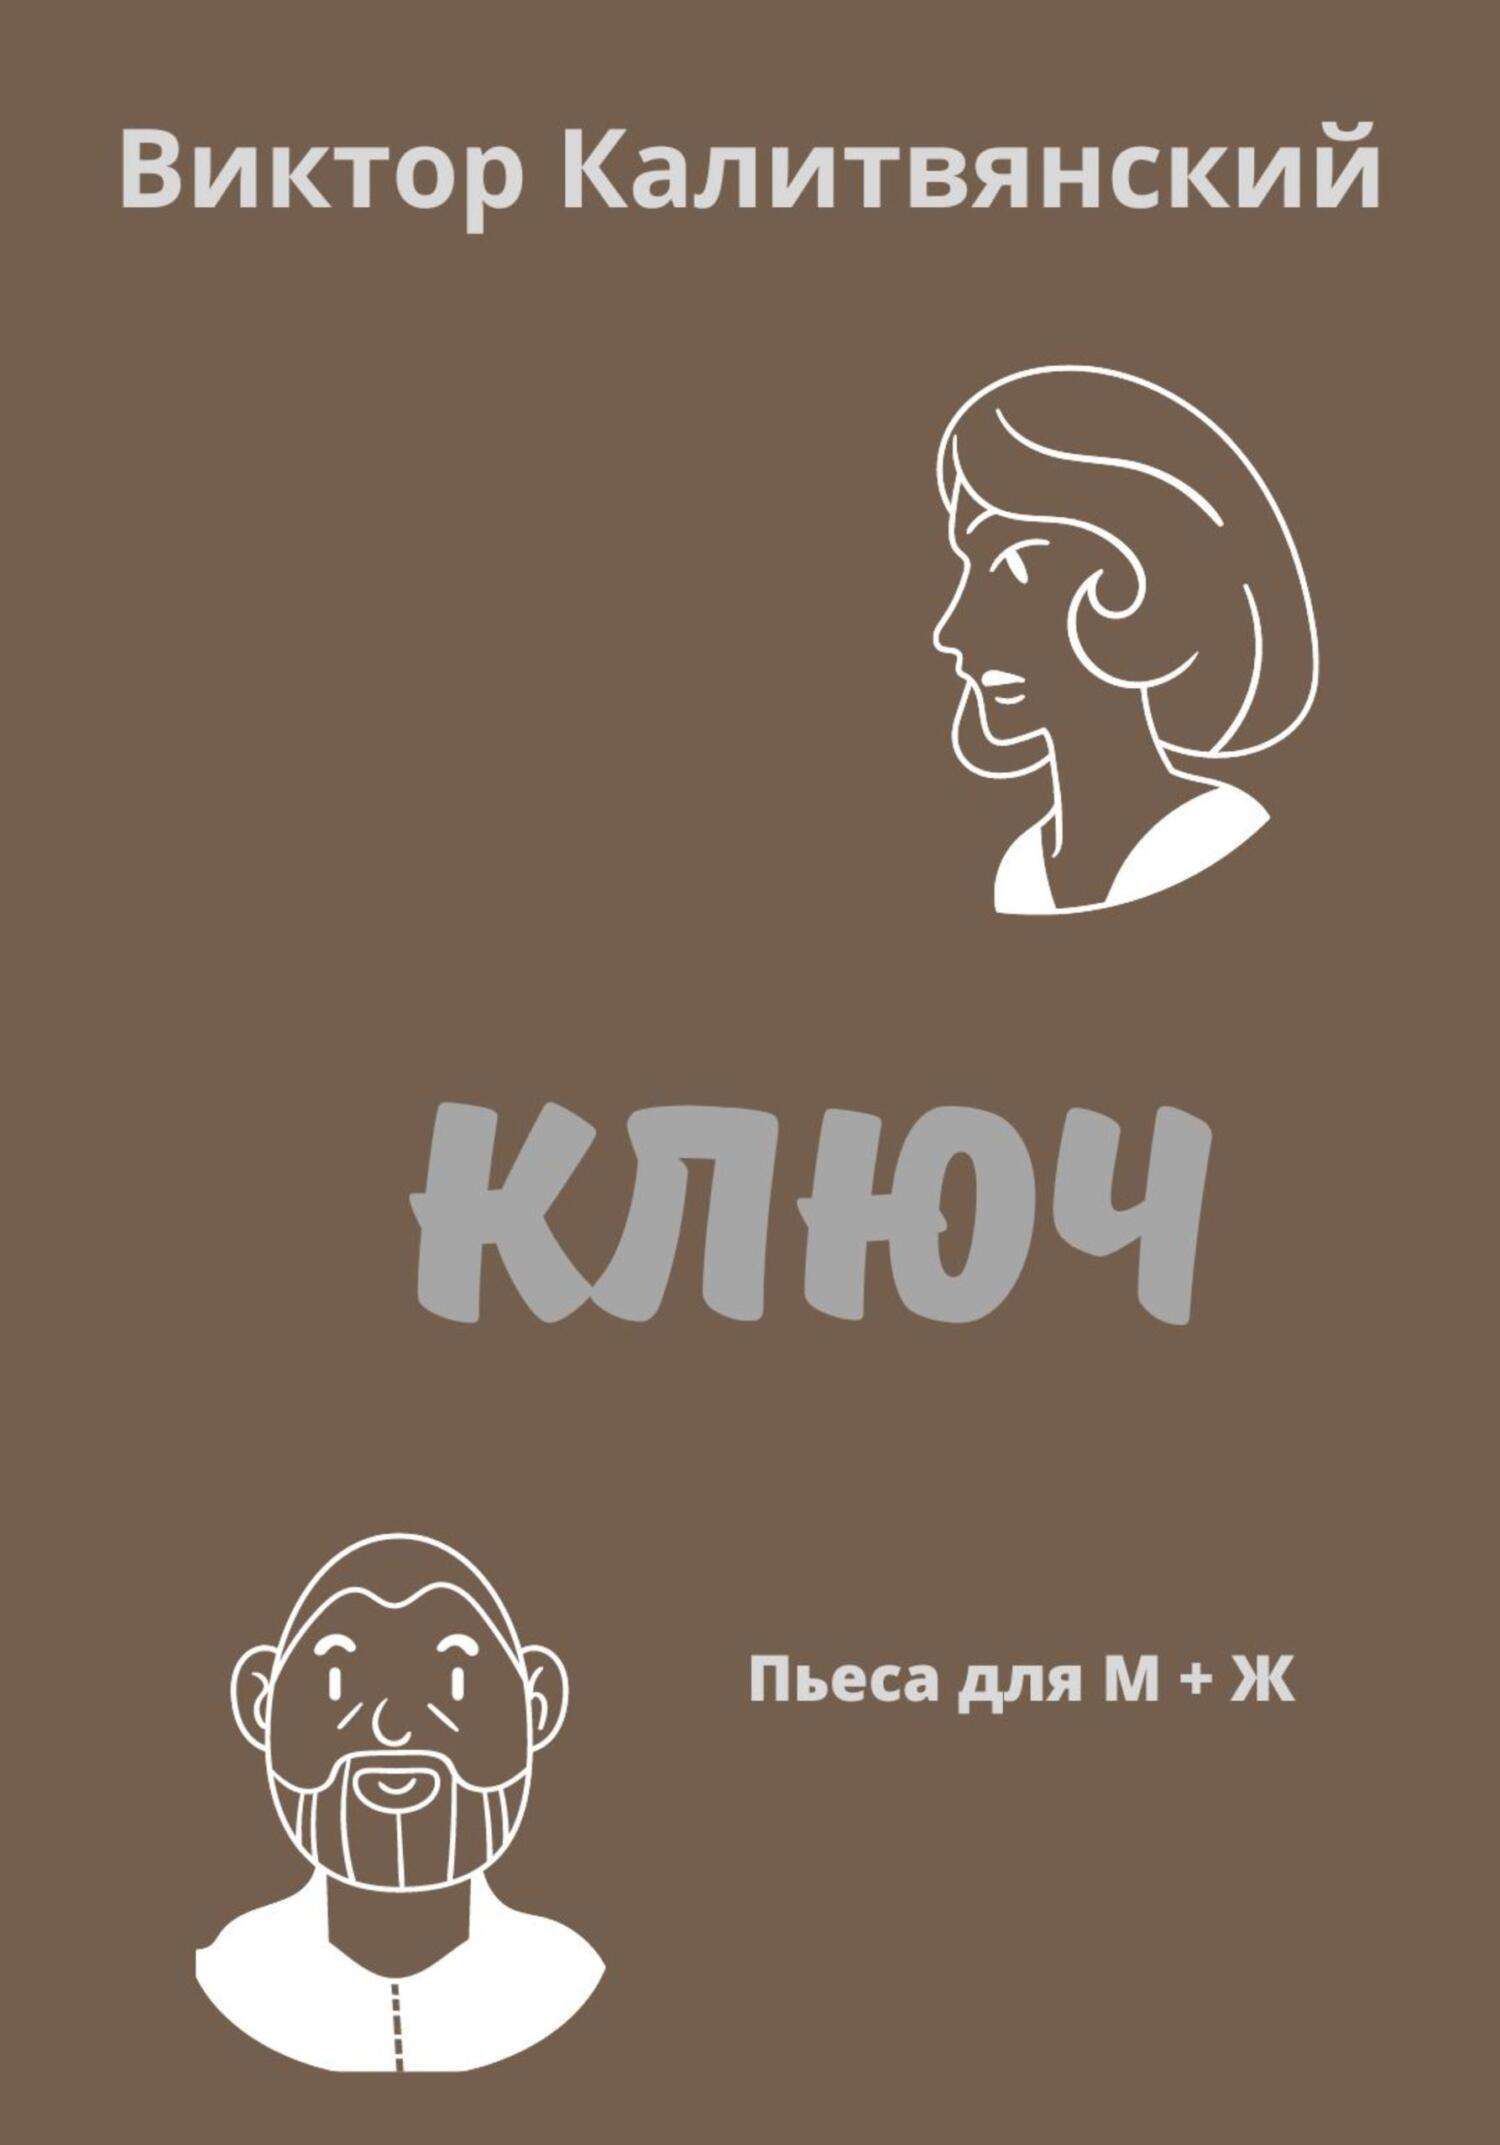 Ключ - Виктор Иванович Калитвянский